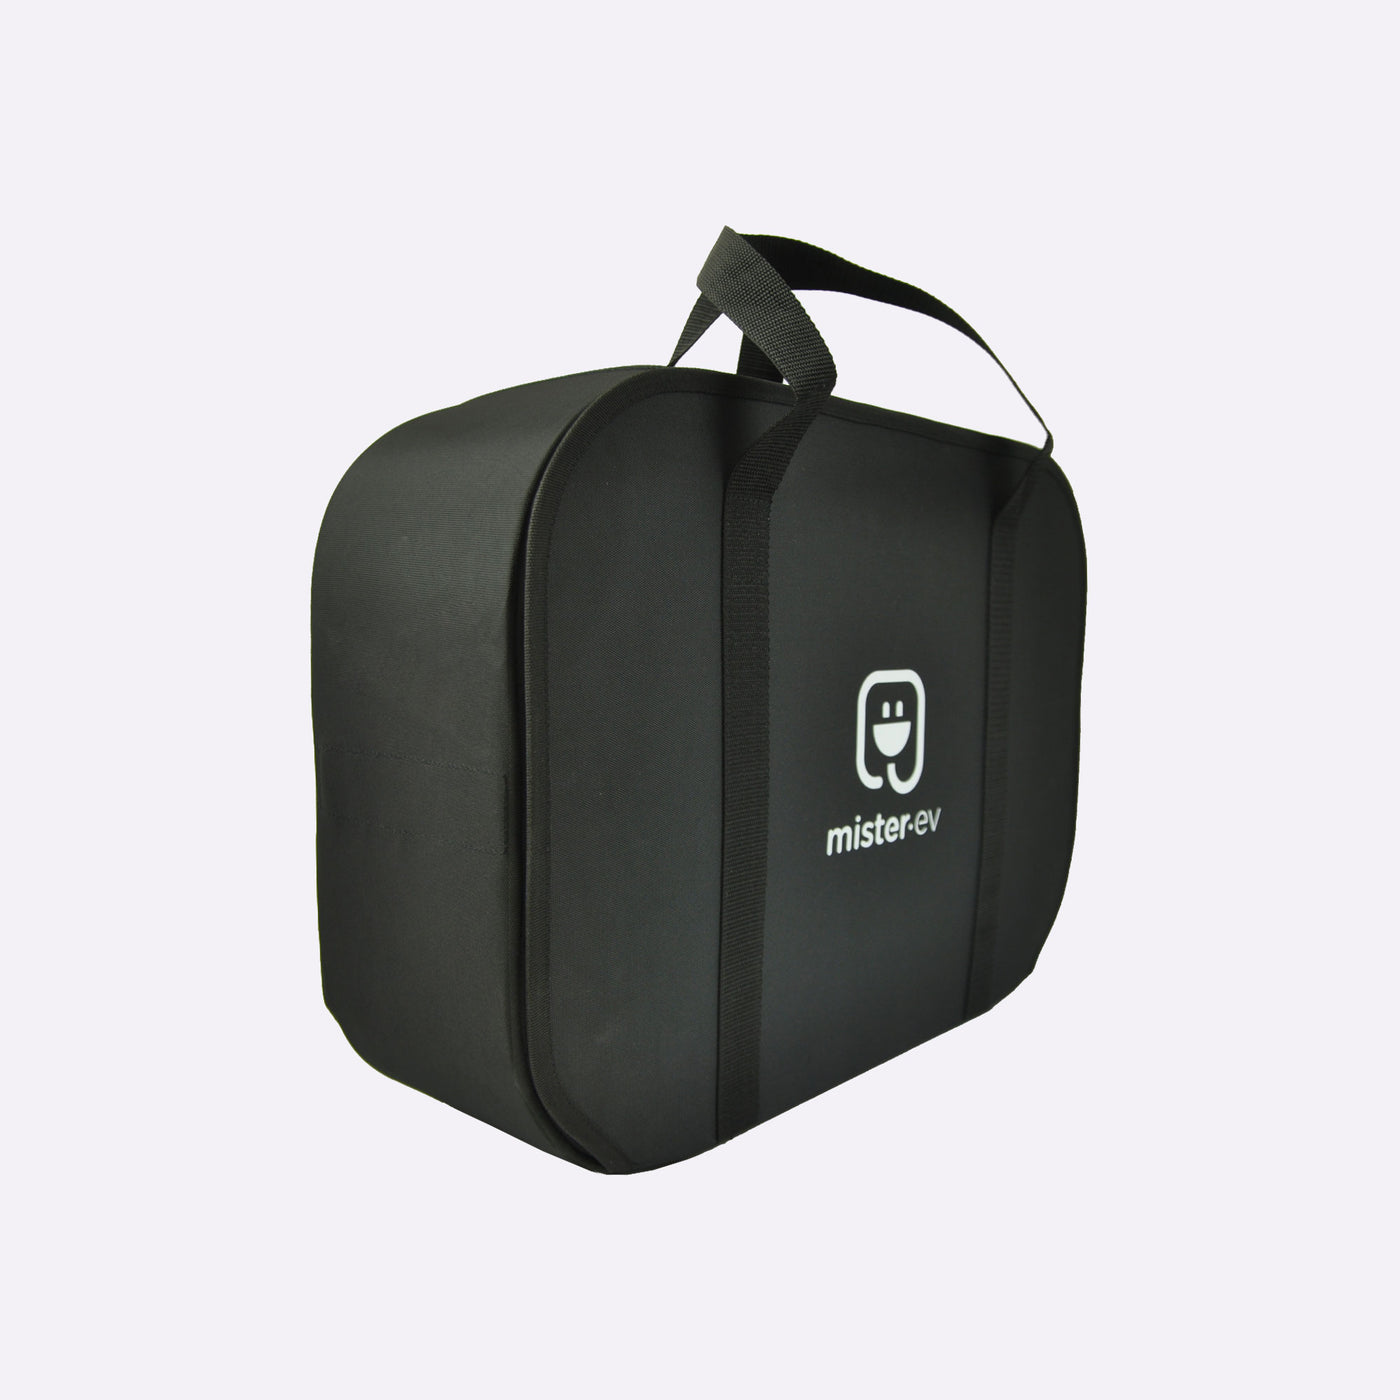 Un chargeur portable pour véhicules électriques format valise !